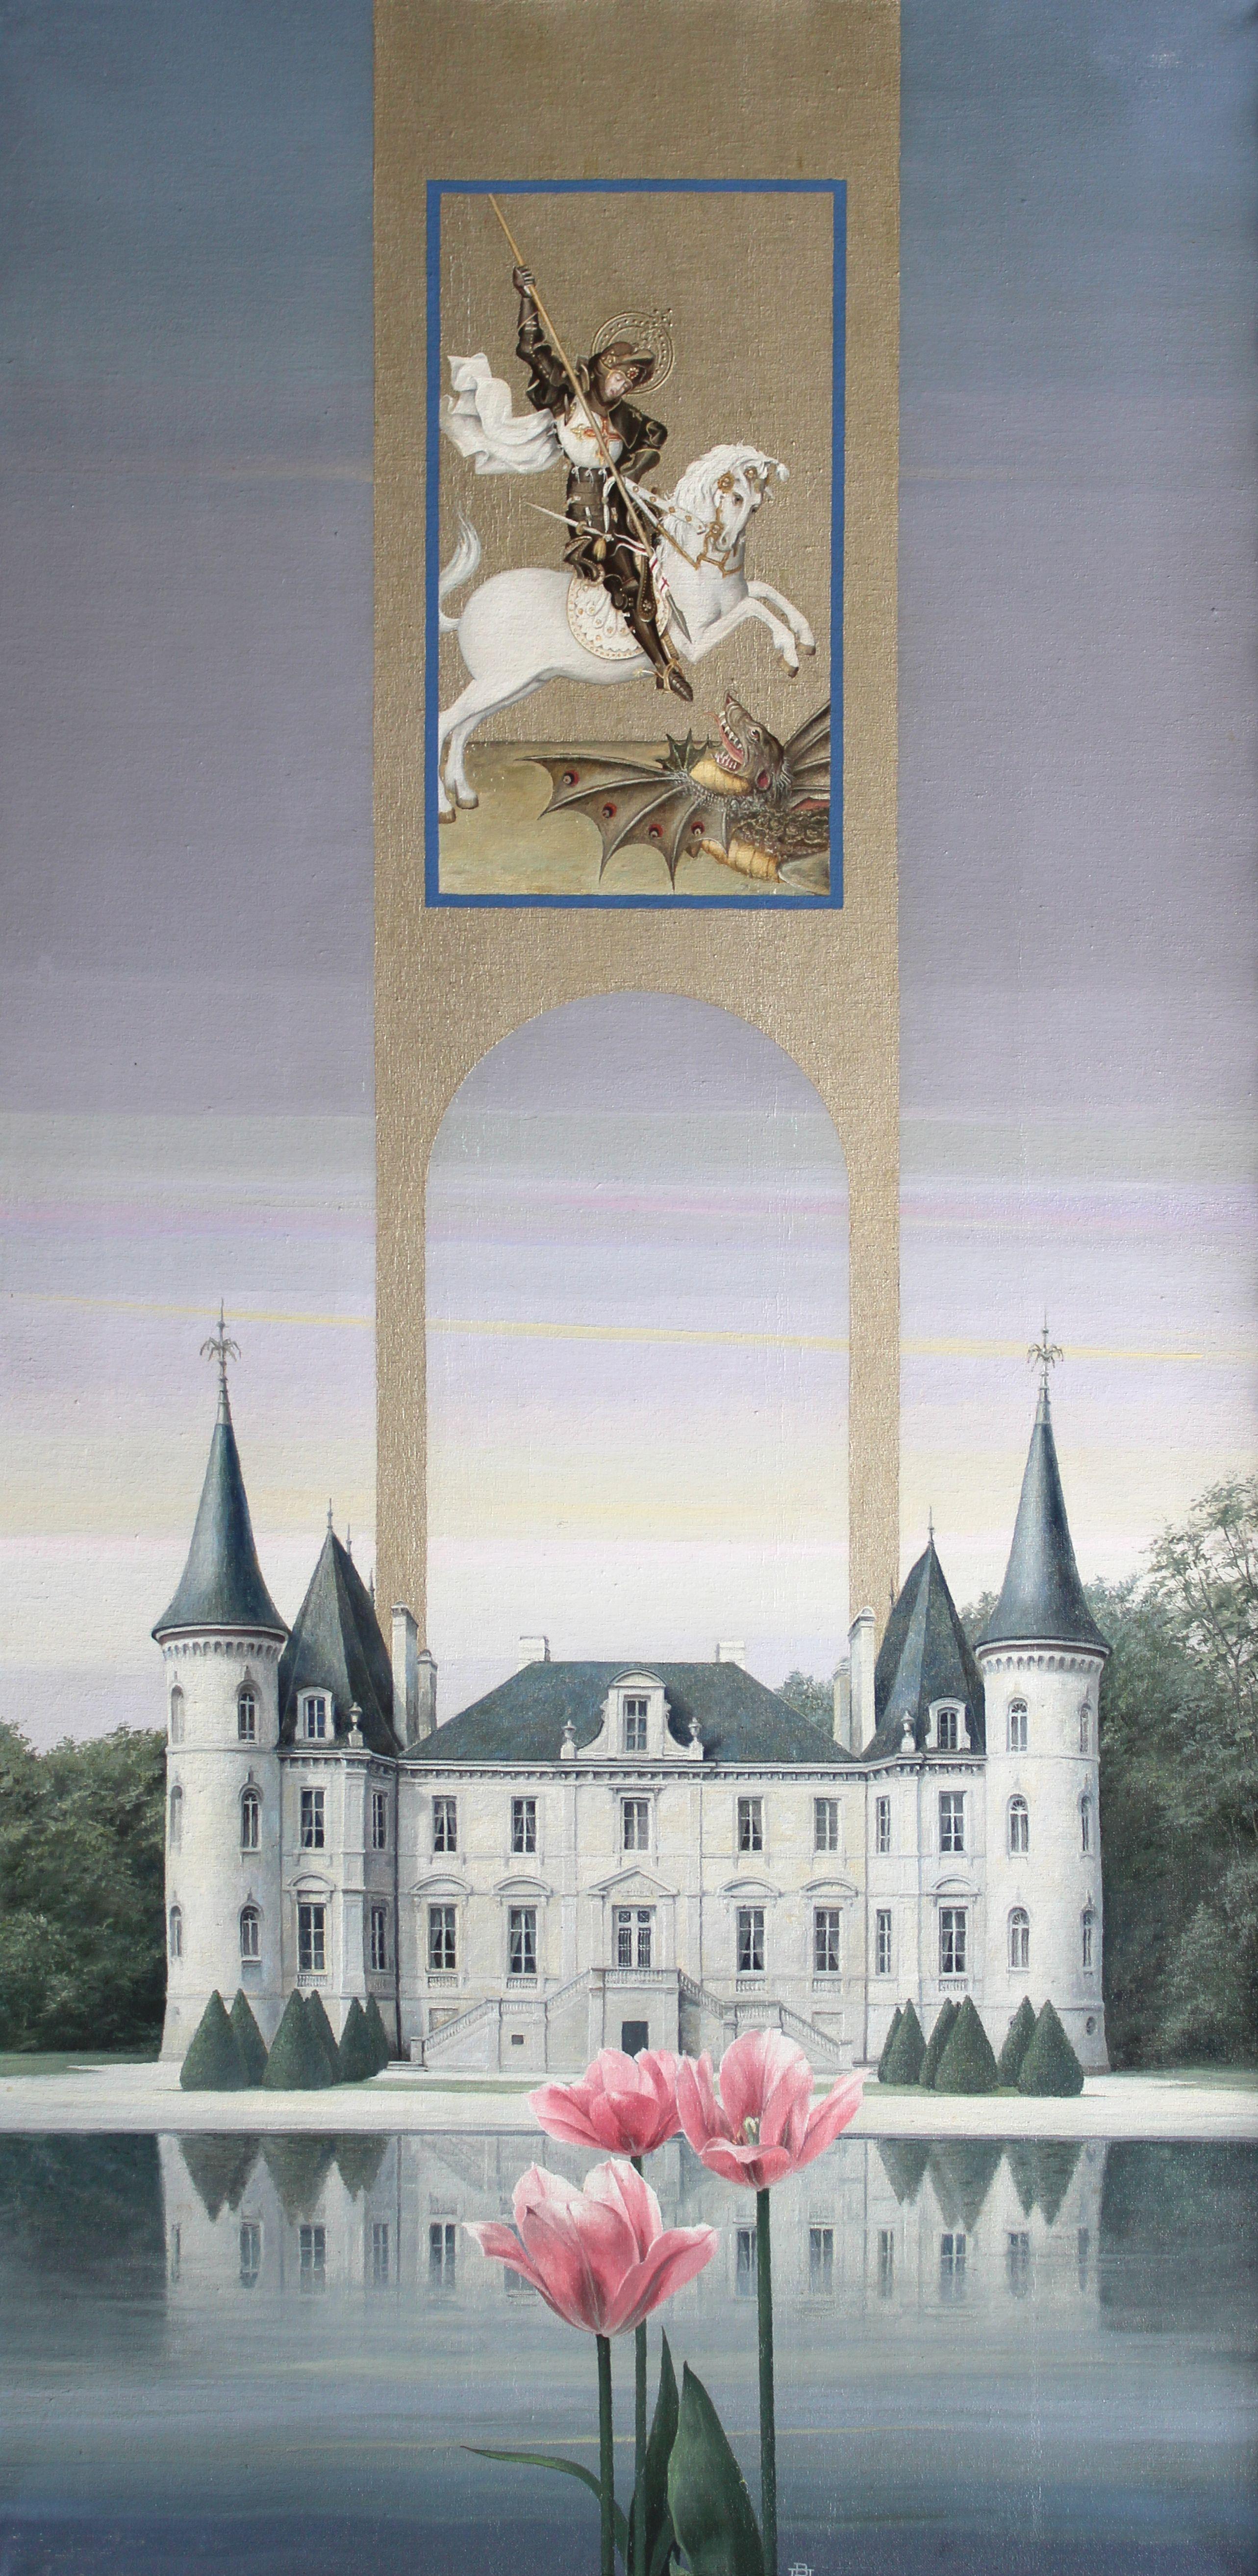 Château Pichon-Longueville. 1994. Segeltuch, Öl, 80x40 cm